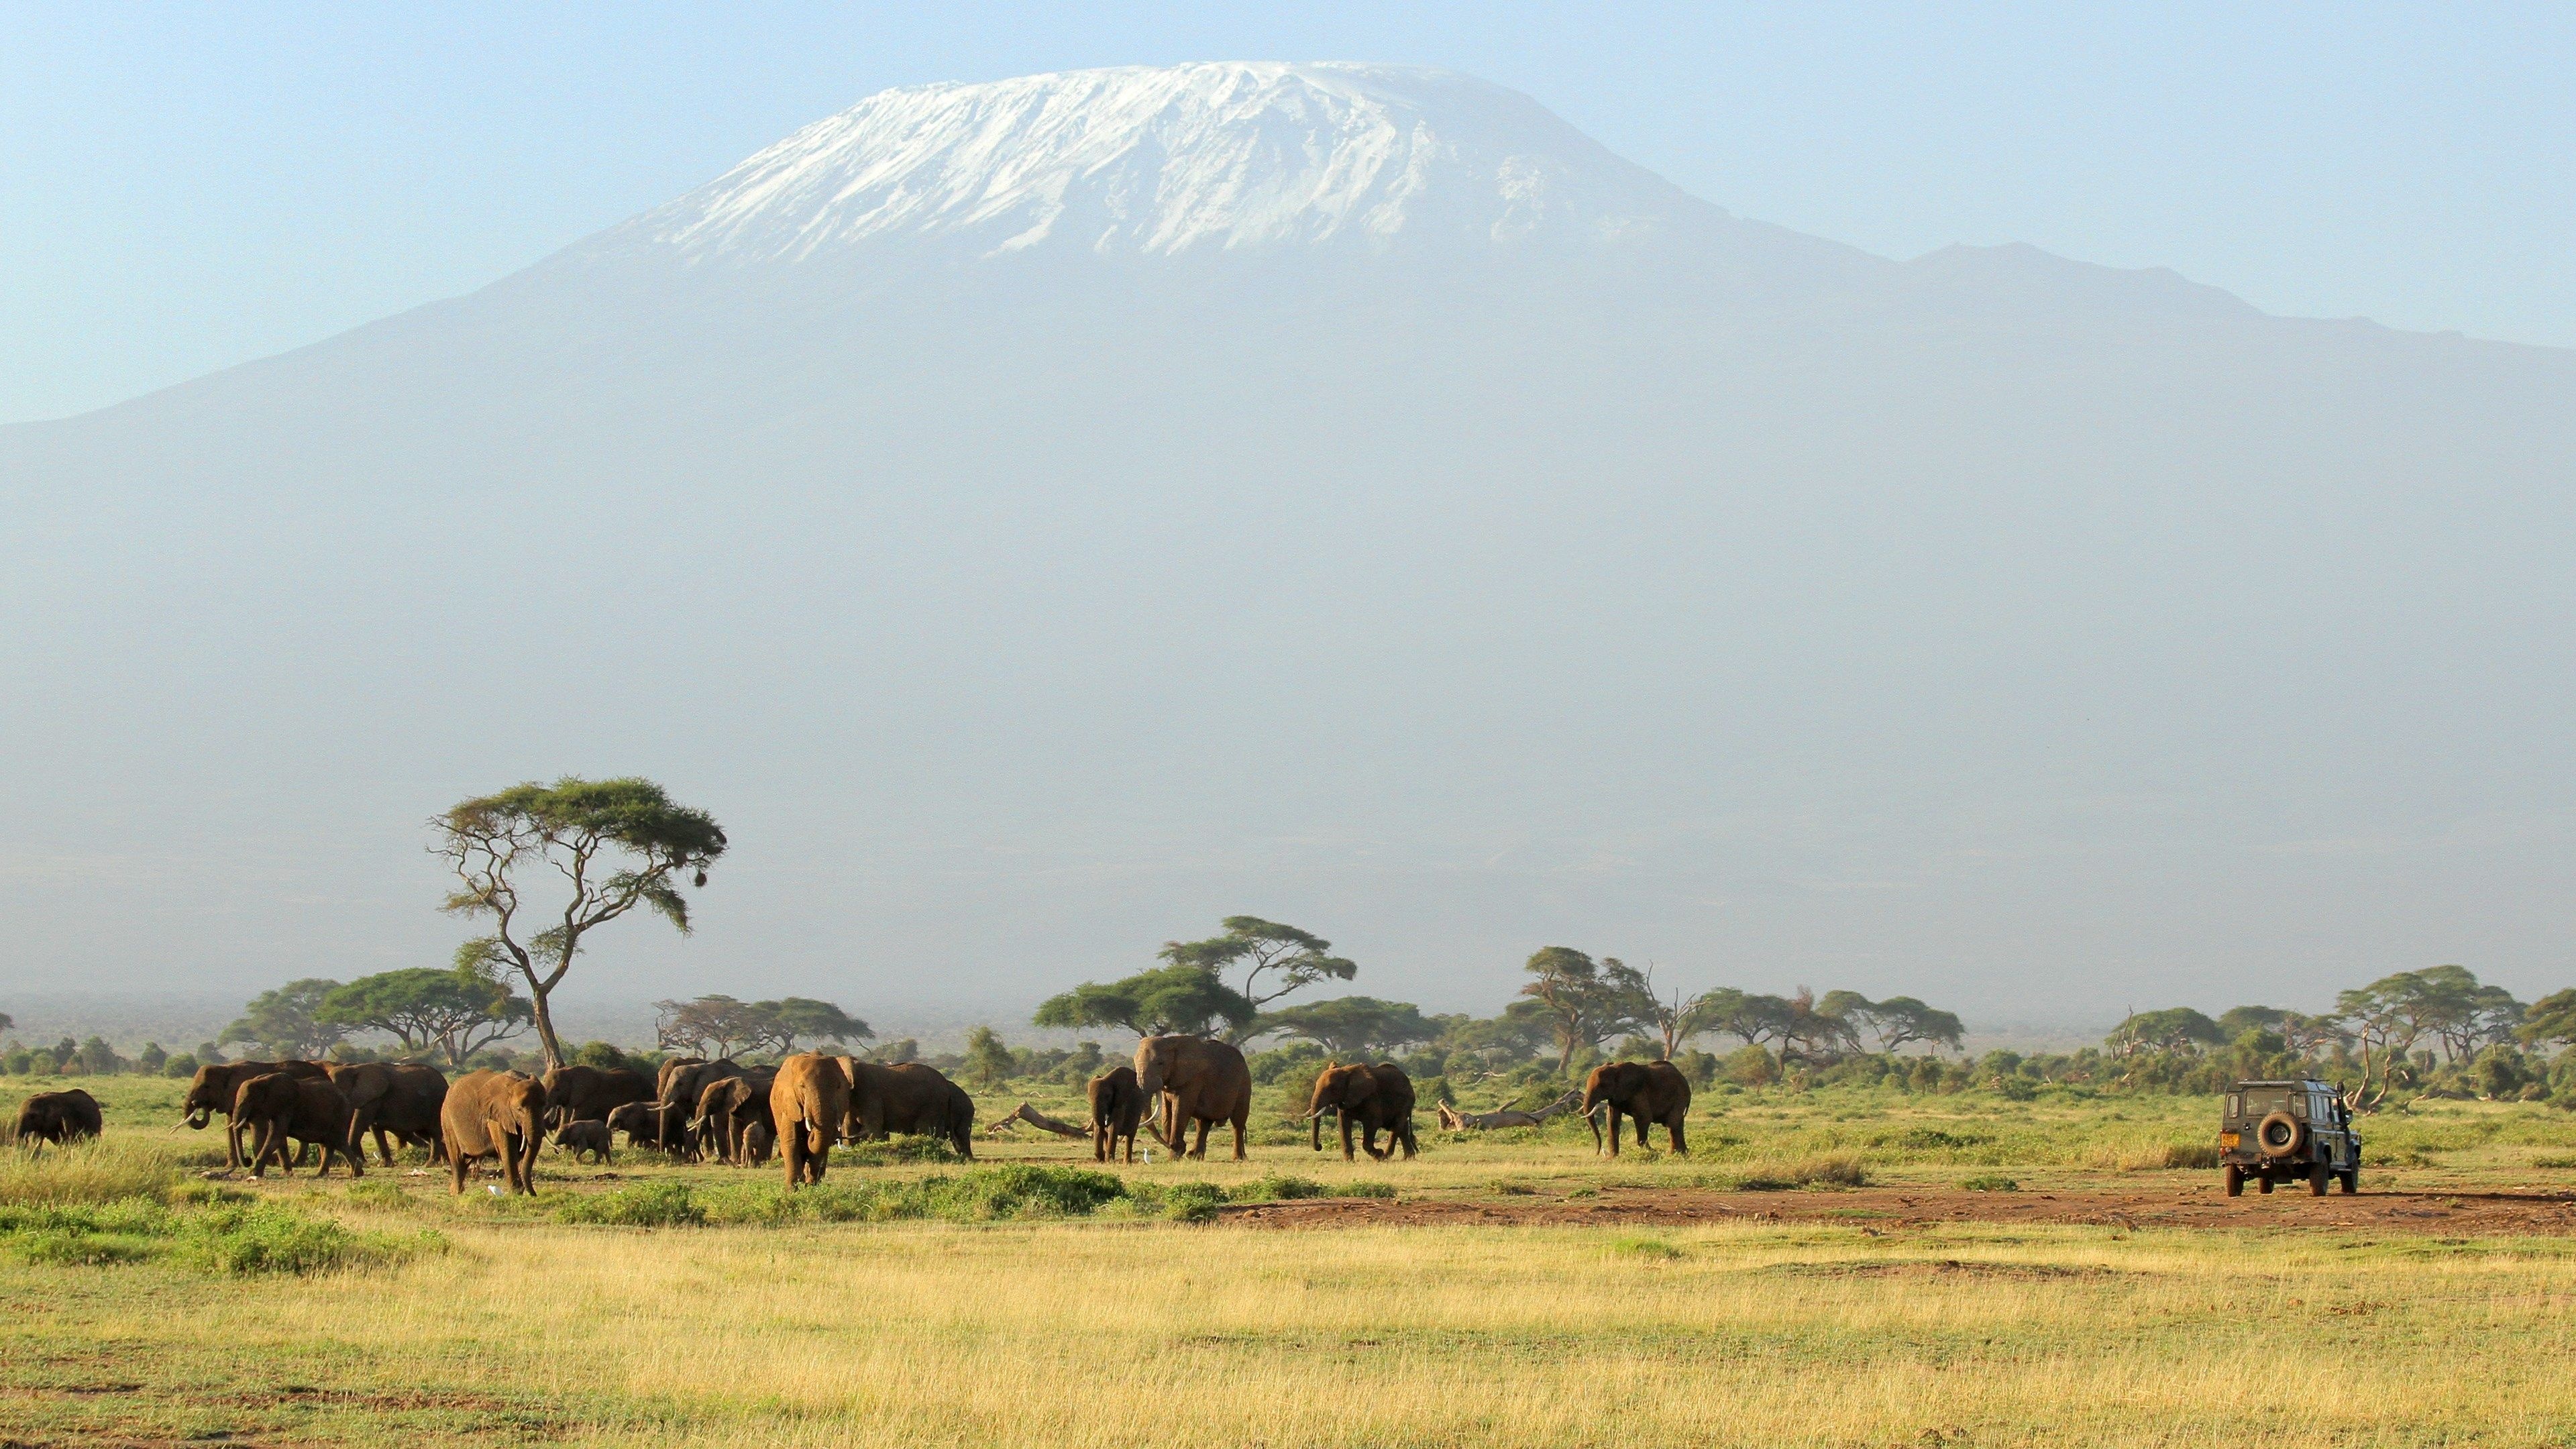 Africa Safari Tour, elephant pictures, savannah chat, 3840x2160 4K Desktop